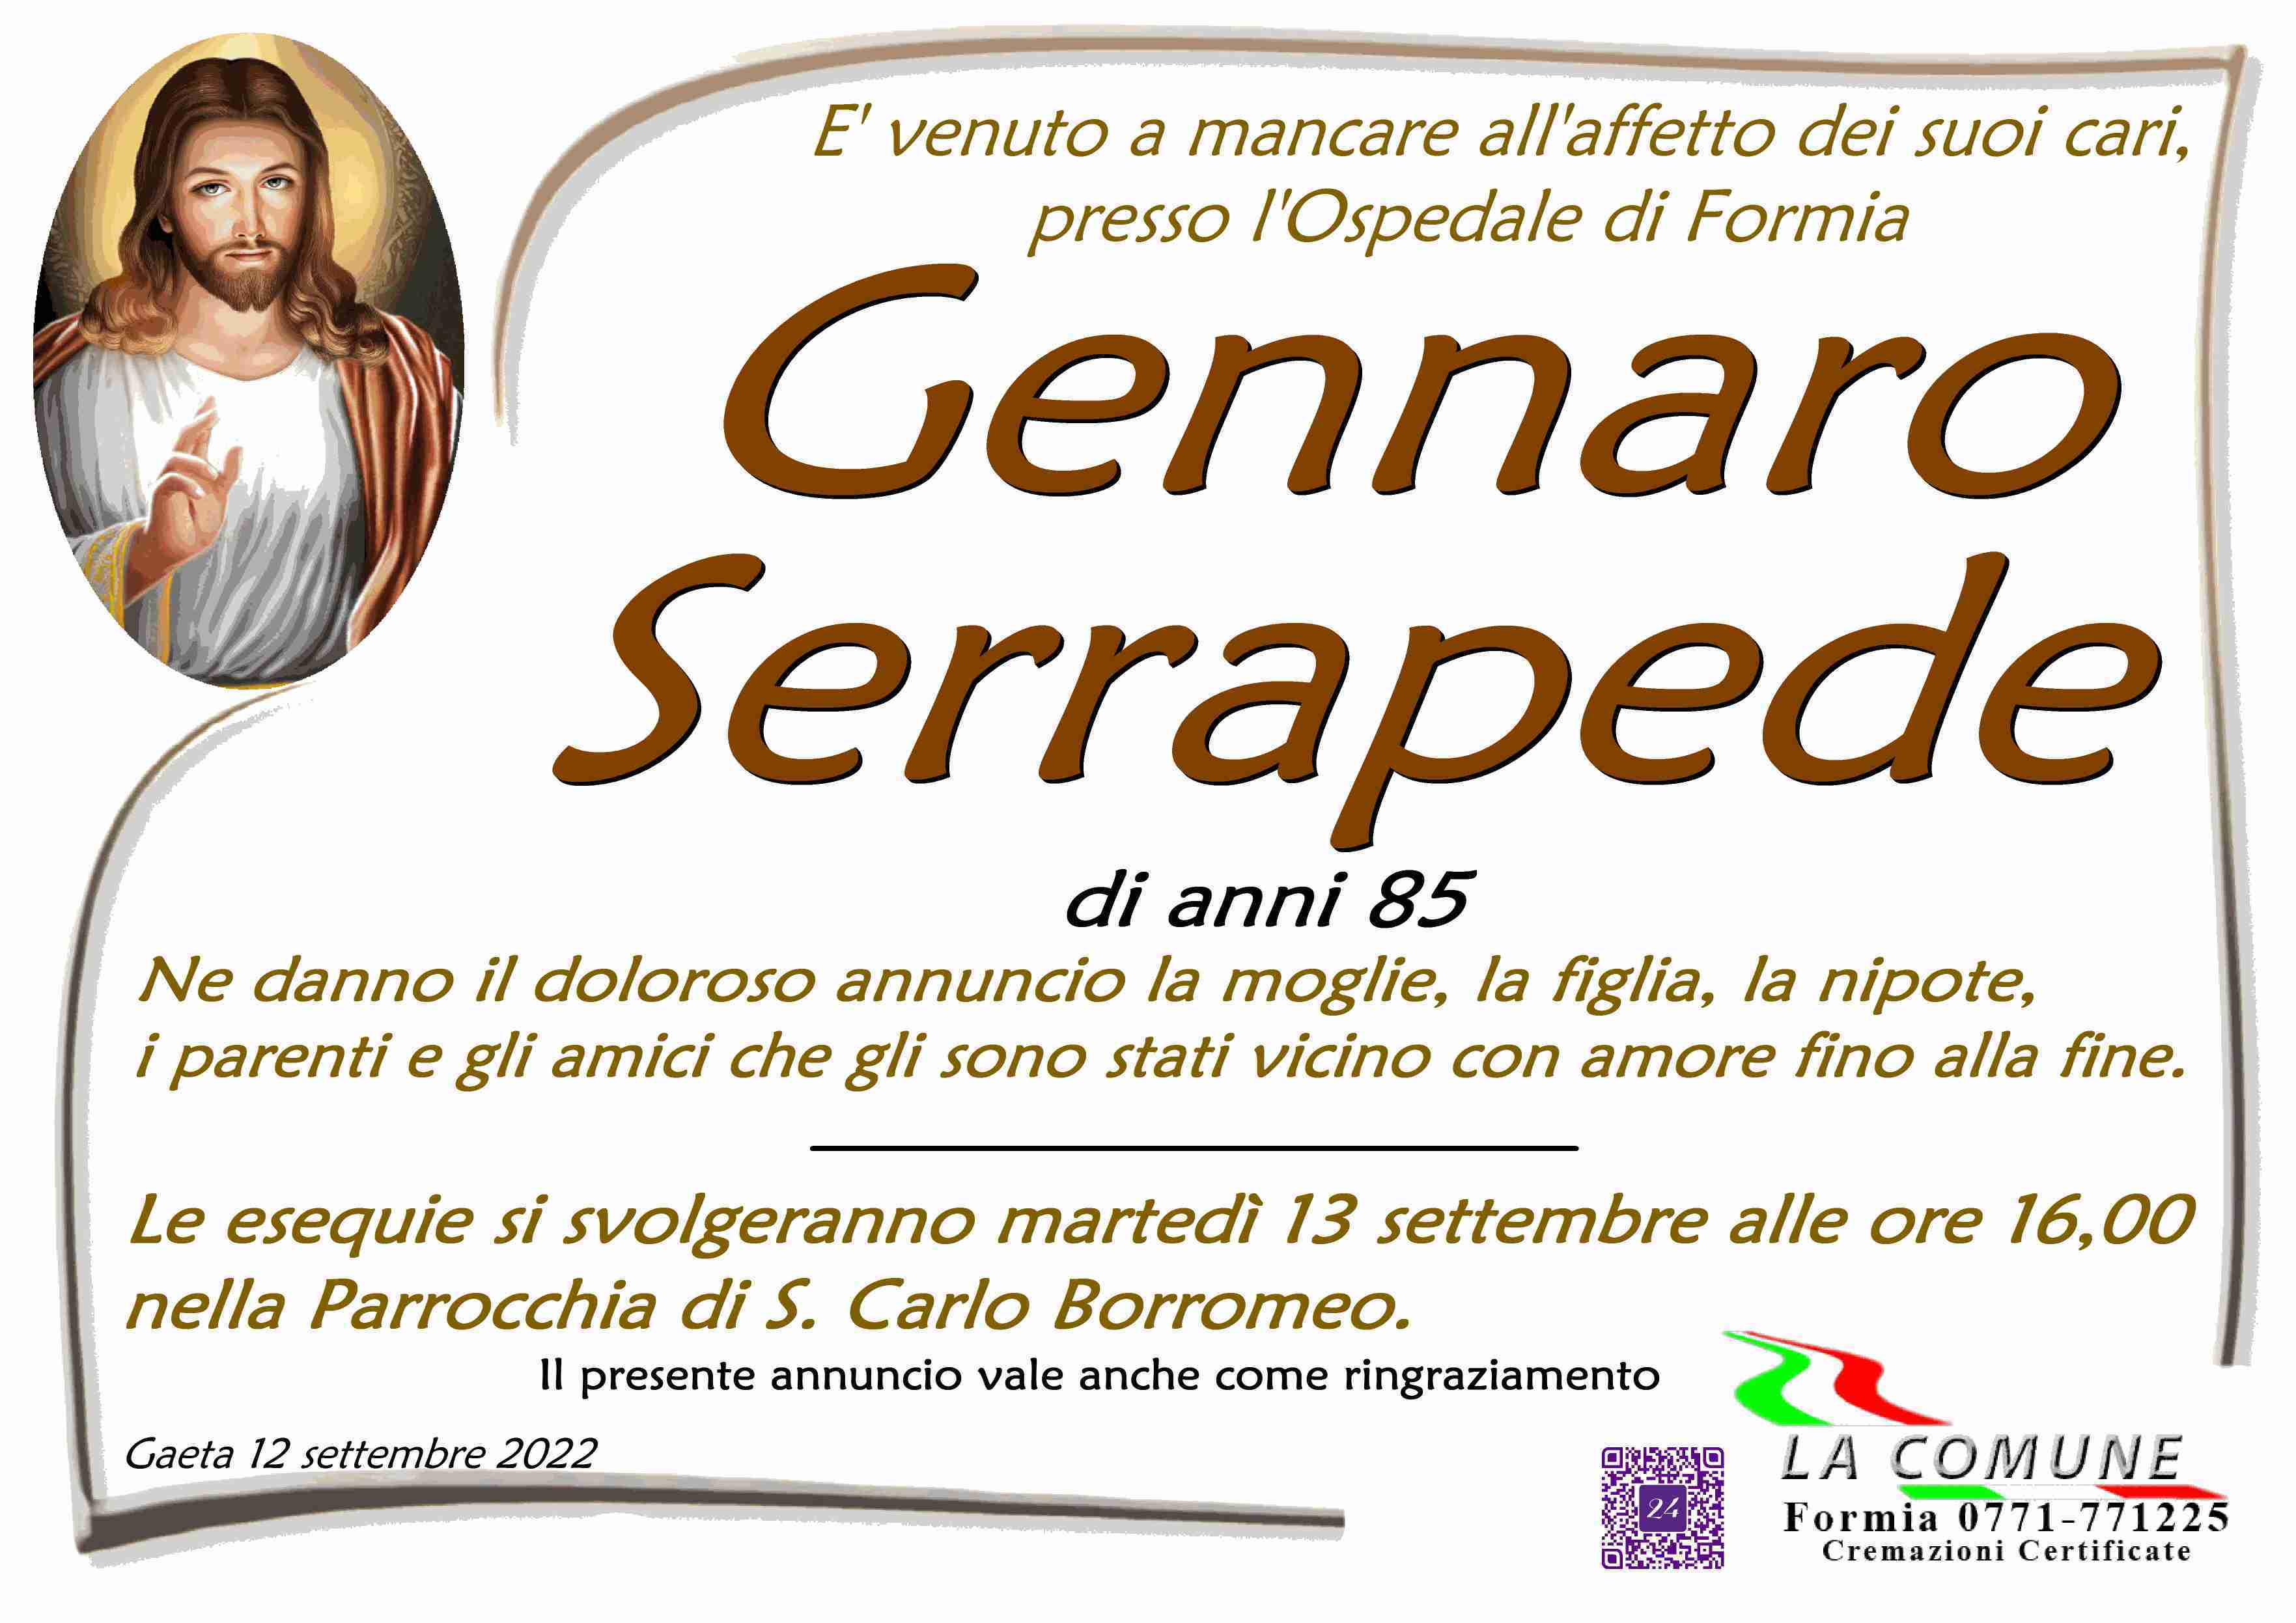 Gennaro Serrapede